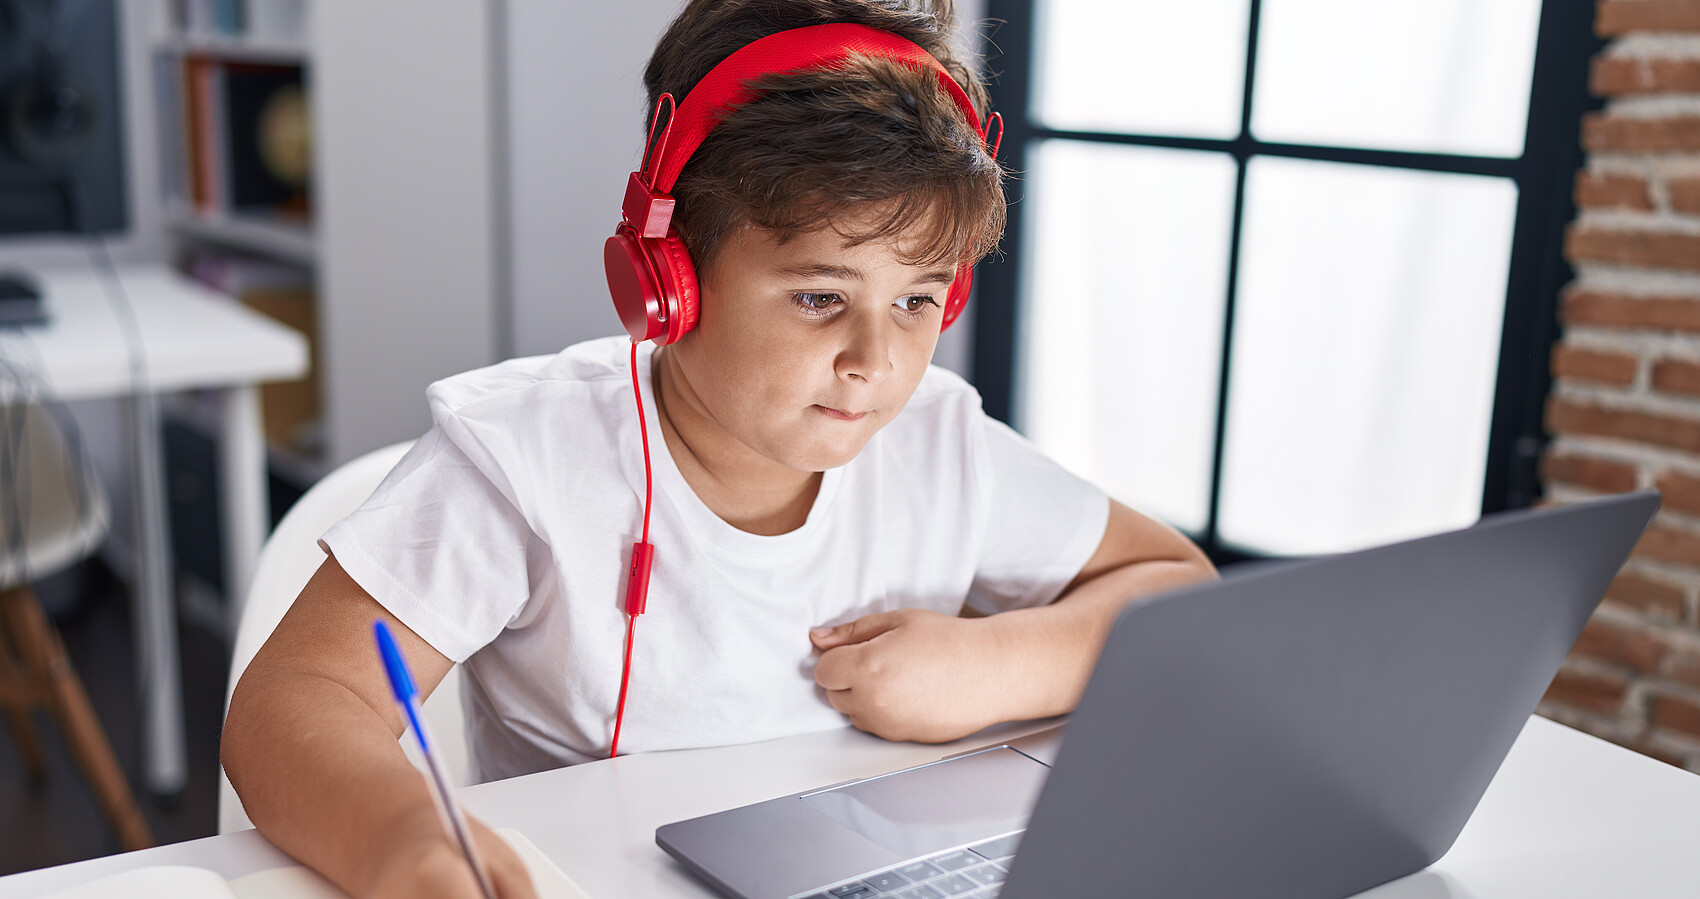 Schüler im Klassenzimmer vor seinem PC mit rotem Kopfhörer, der in ein Notizbuch schreibt